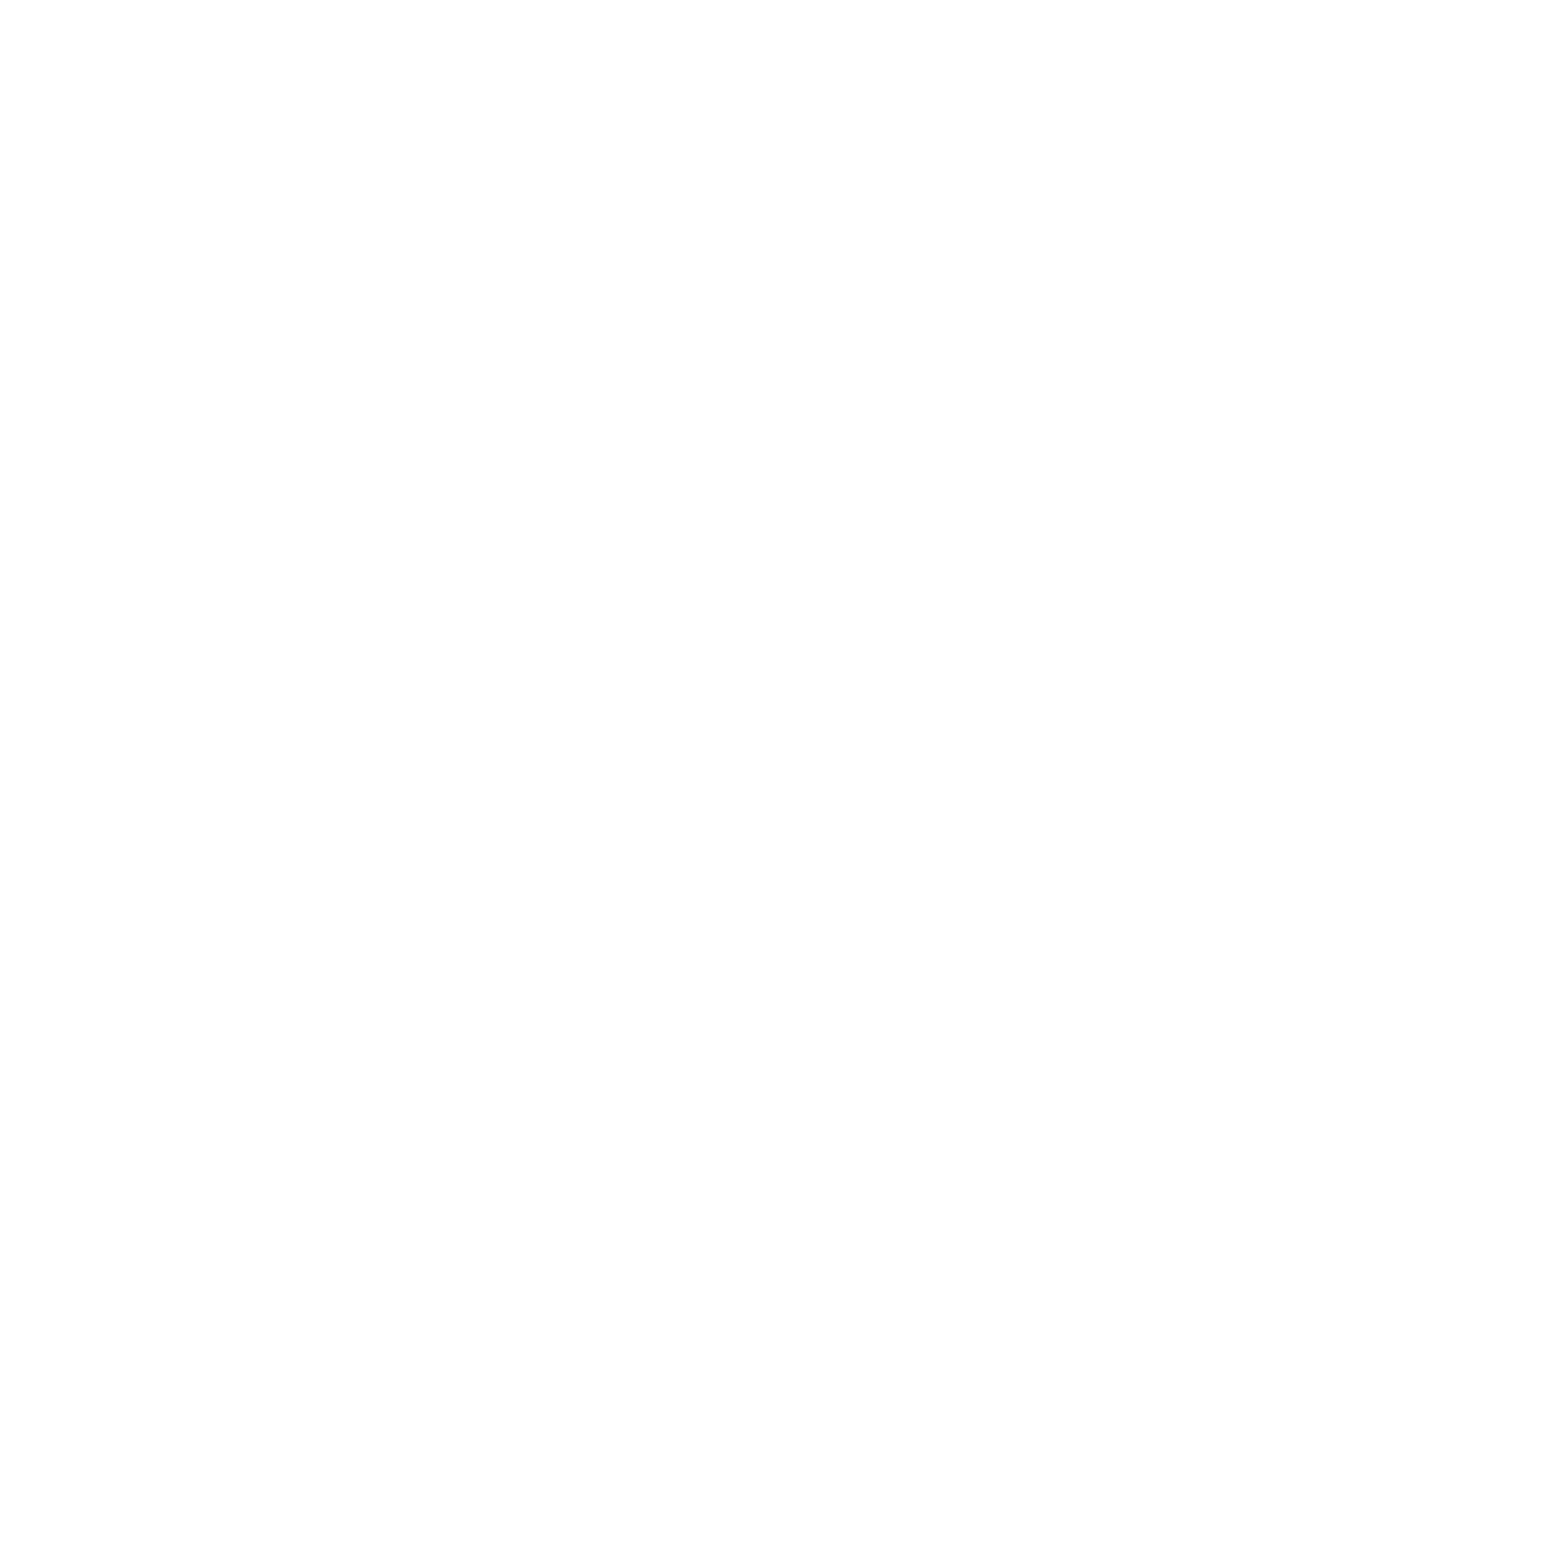 Independent Bank Group logo for dark backgrounds (transparent PNG)